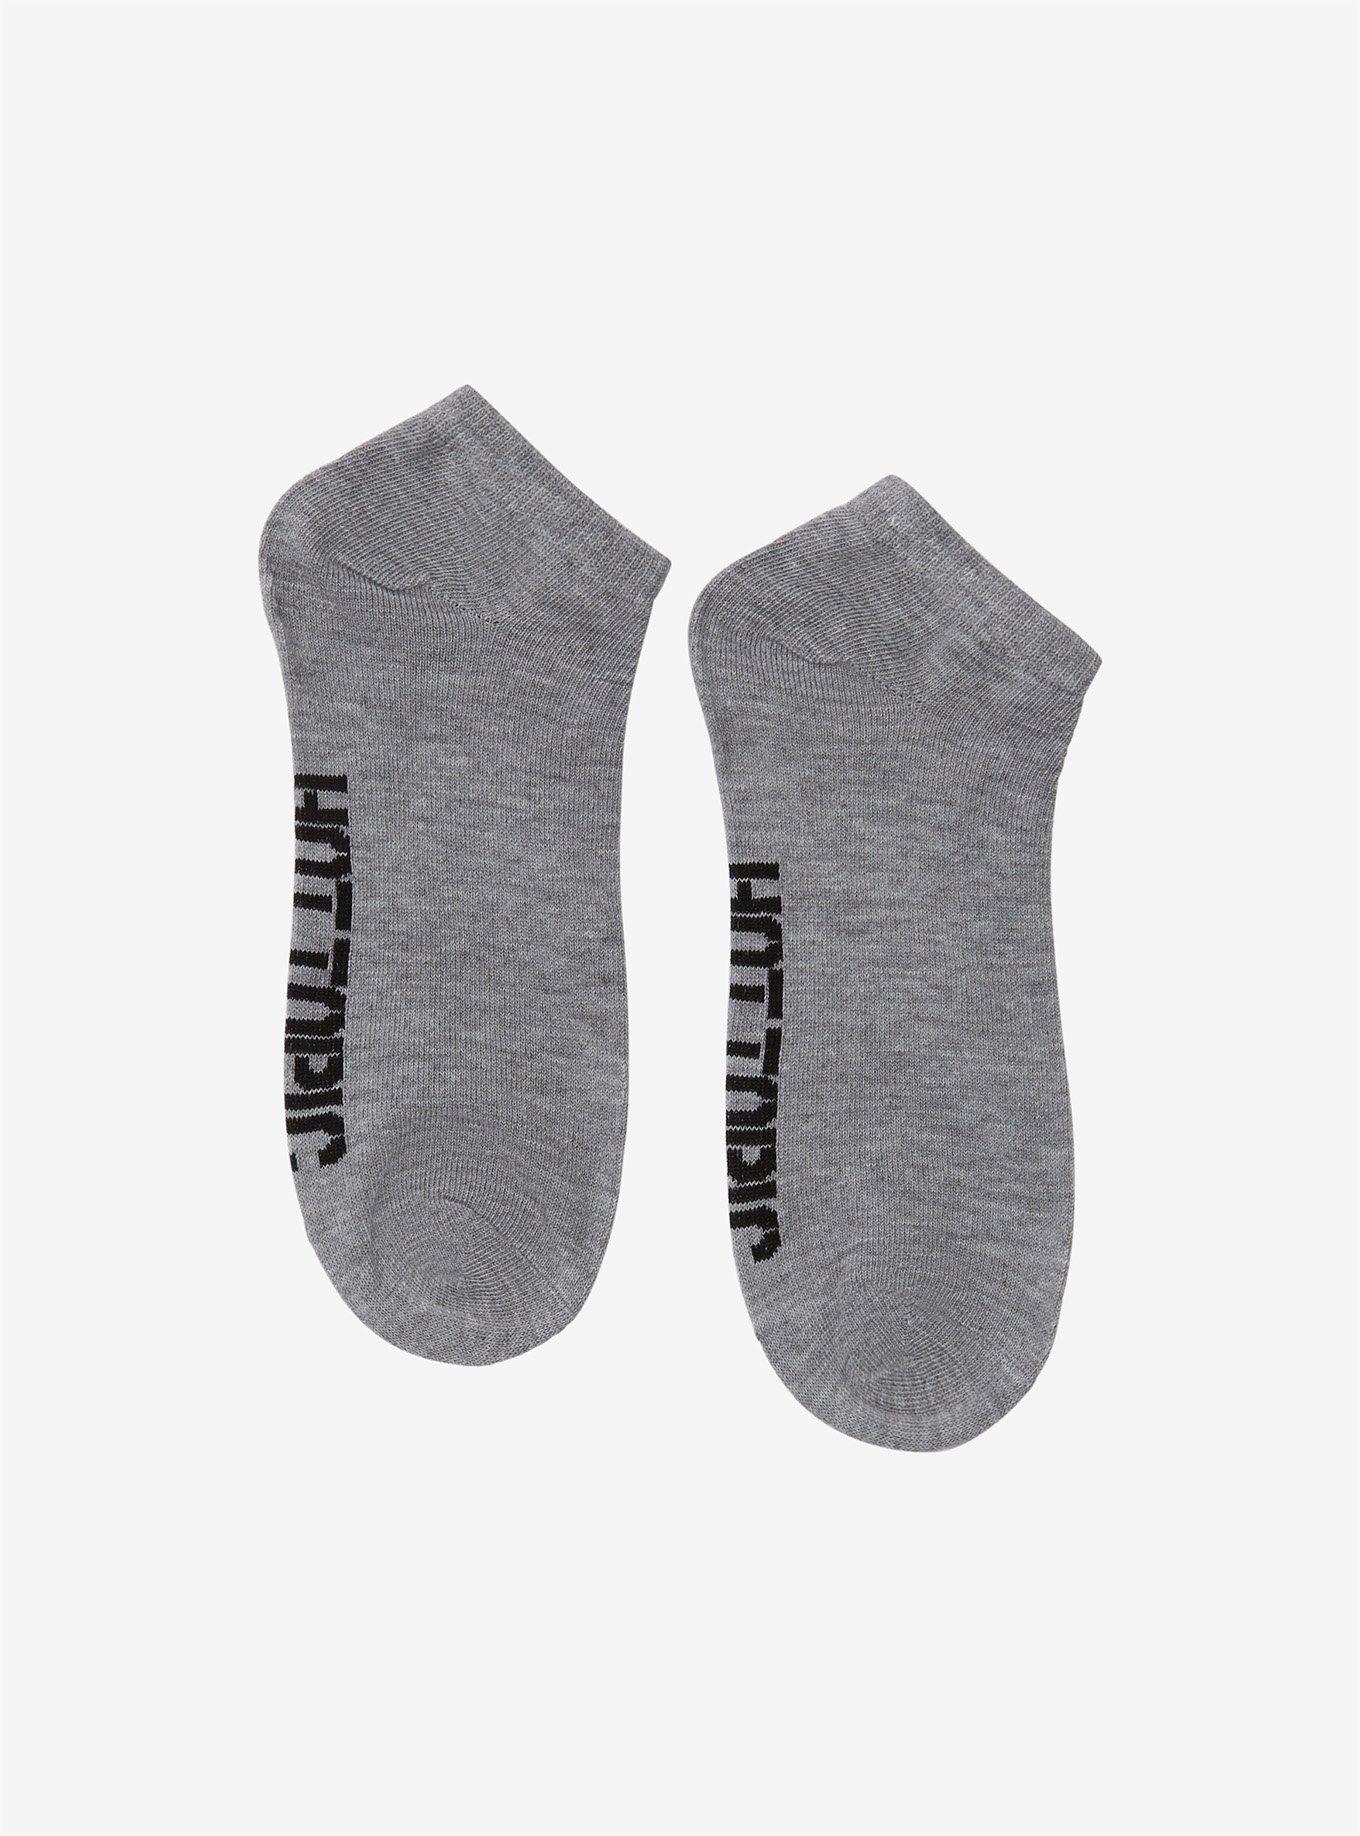 Hot Topic Grey Ankle Socks, , alternate